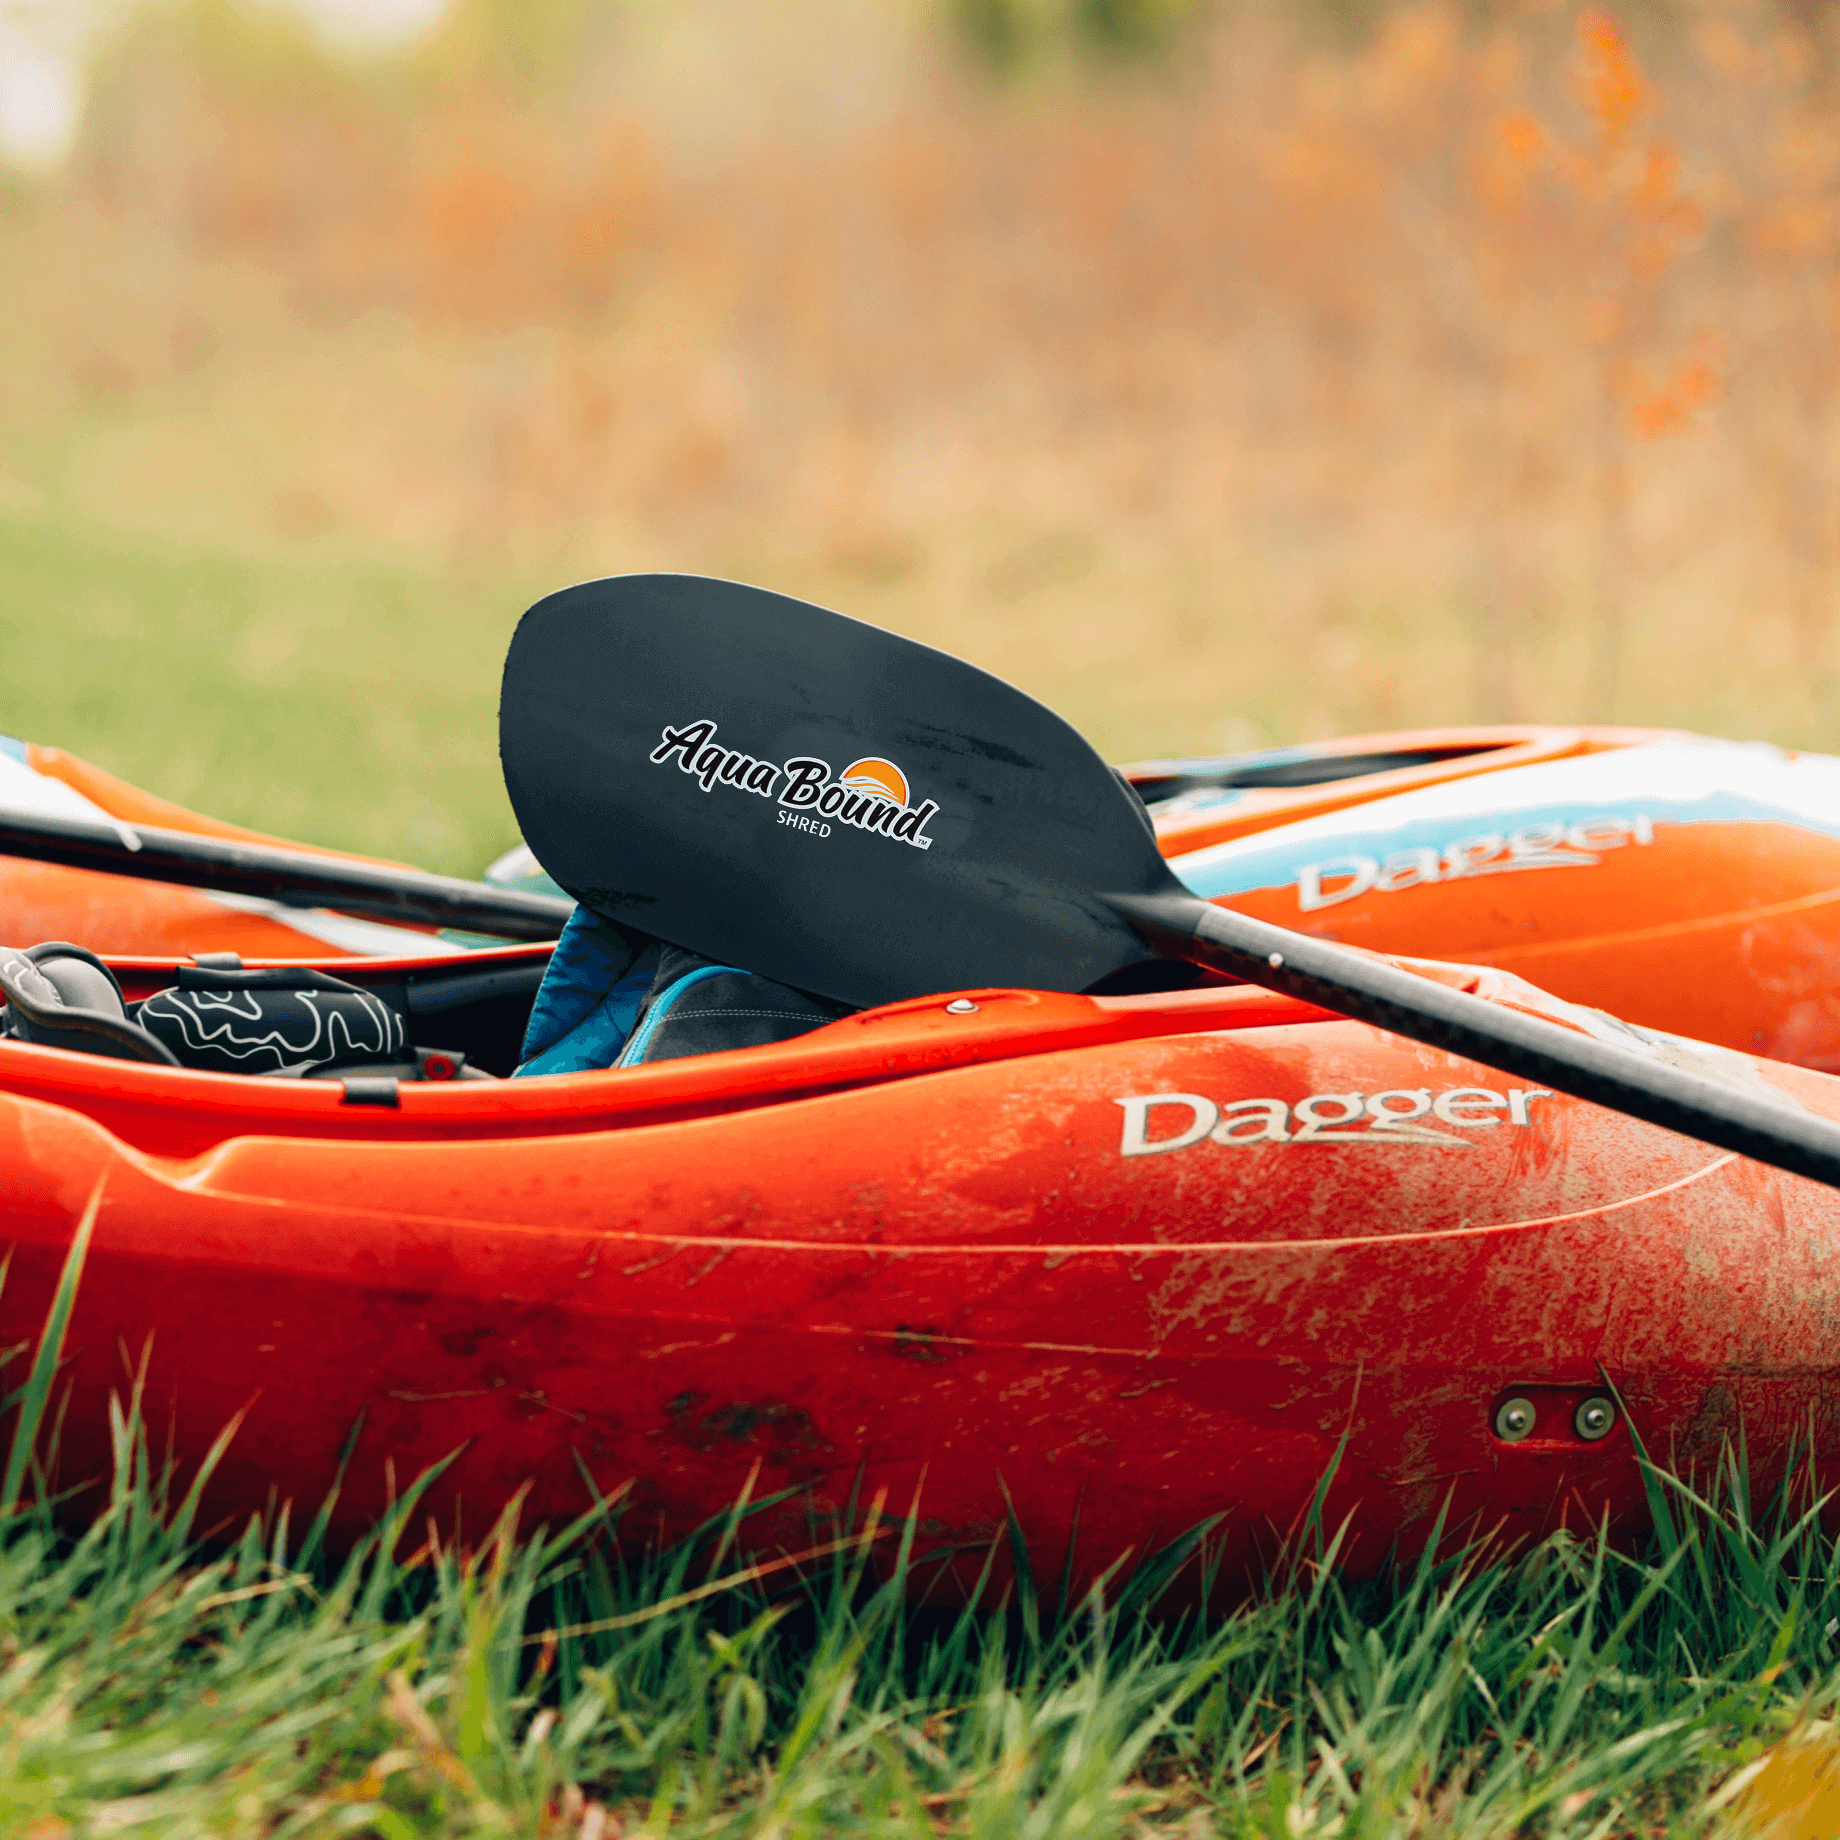 shred carbon whitewater kayak paddle laying on whitewater kayak 